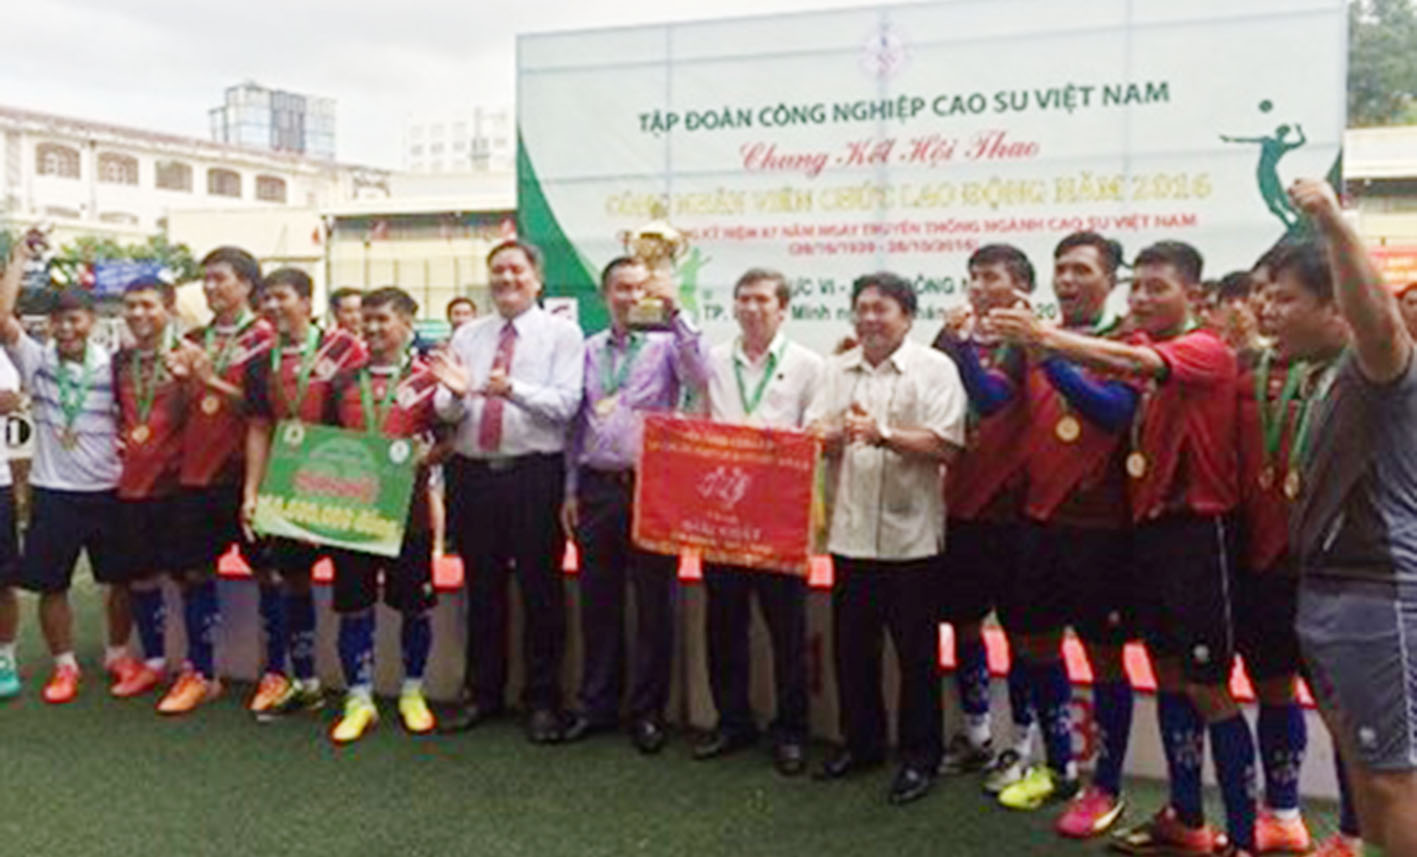 Ông Võ Sĩ Lực (ảnh thứ 6 từ trái qua) Chủ tịch HĐTV VRG và ông Phan Mạnh Hùng (ảnh thứ 5 từ phải qua) trao giải nhất cho đội bóng đá Cty TNHH MTV Caosu Phú Riềng